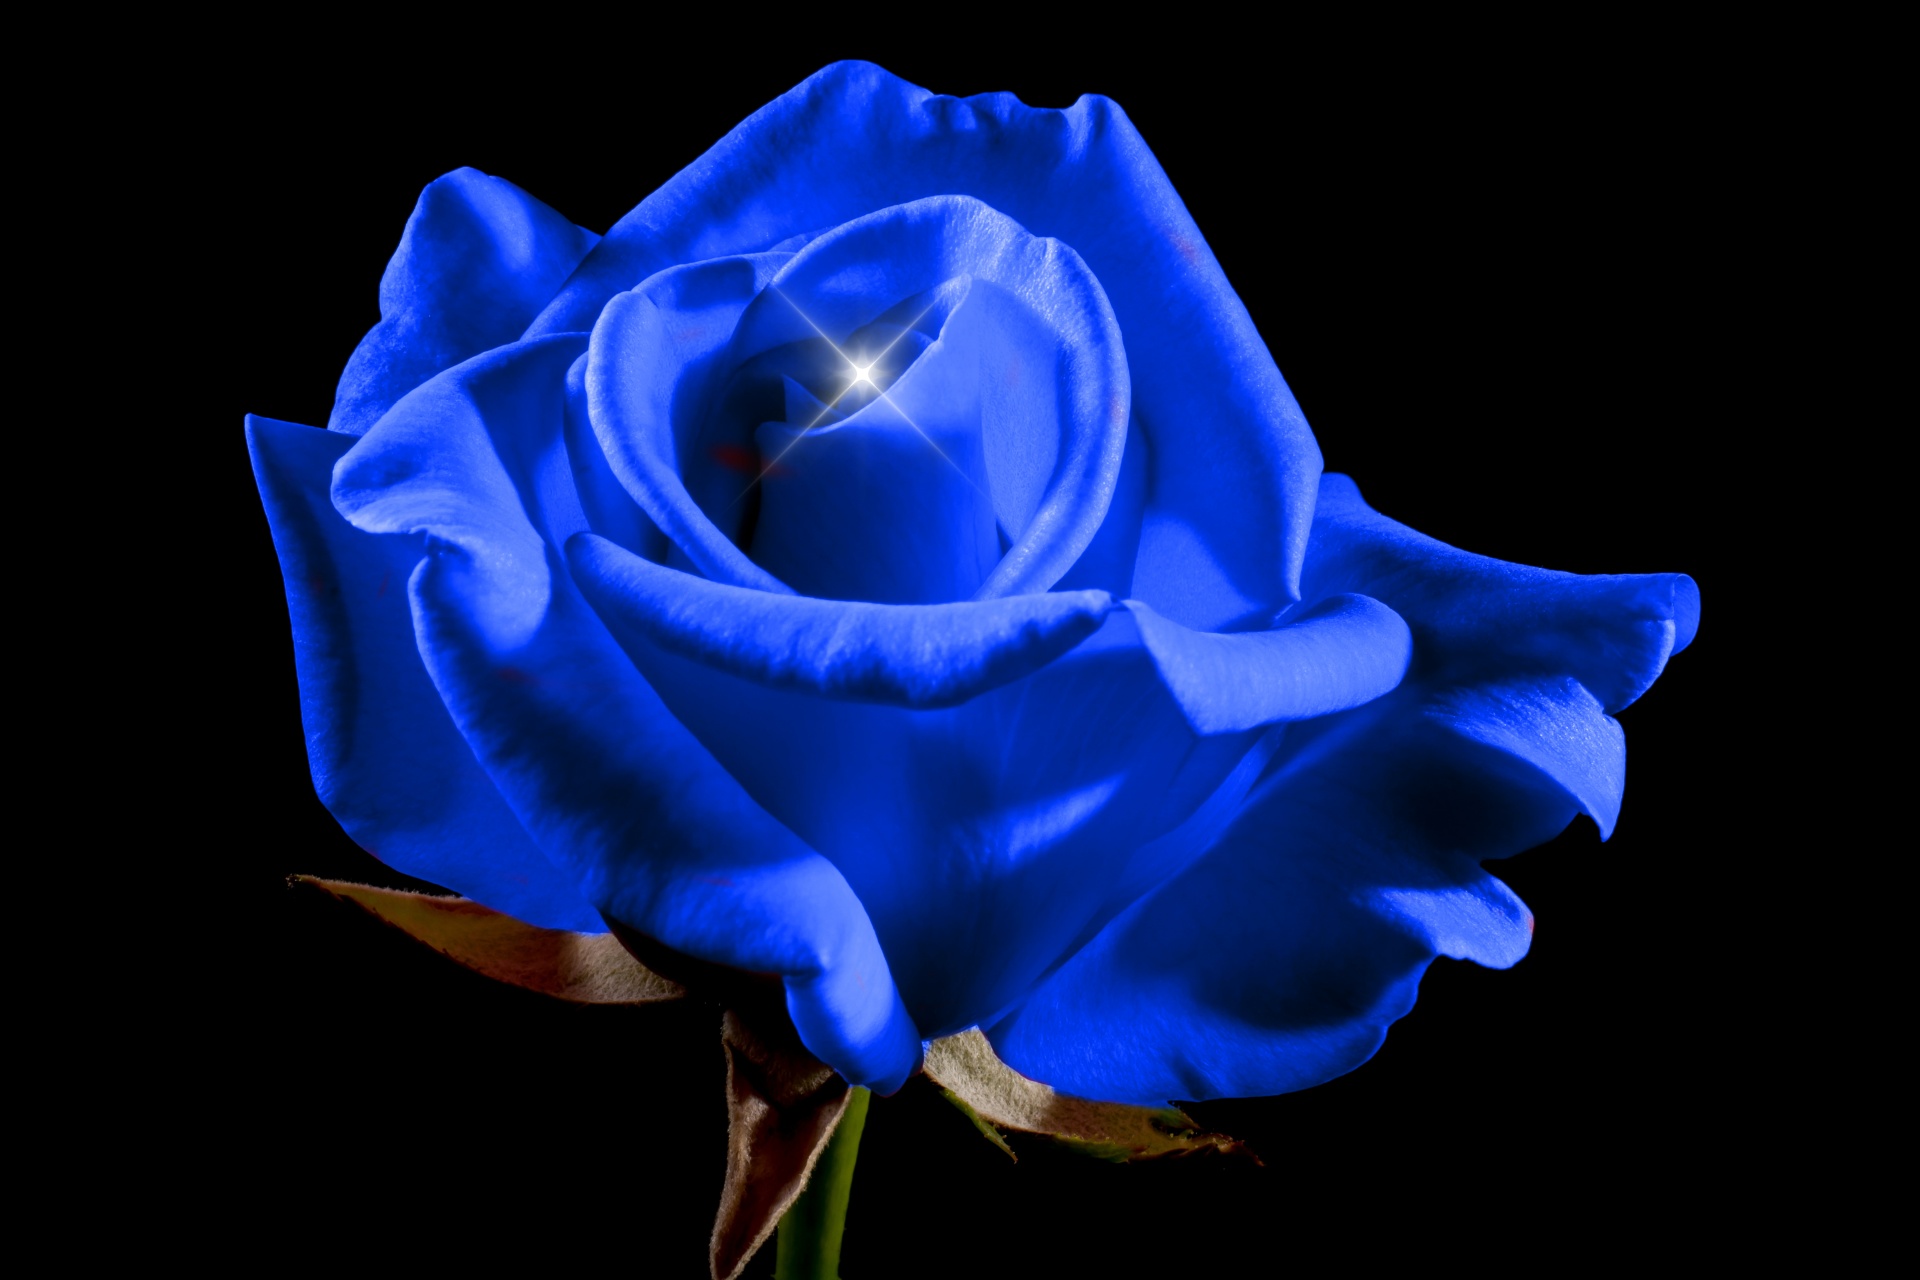 roses blue background free photo